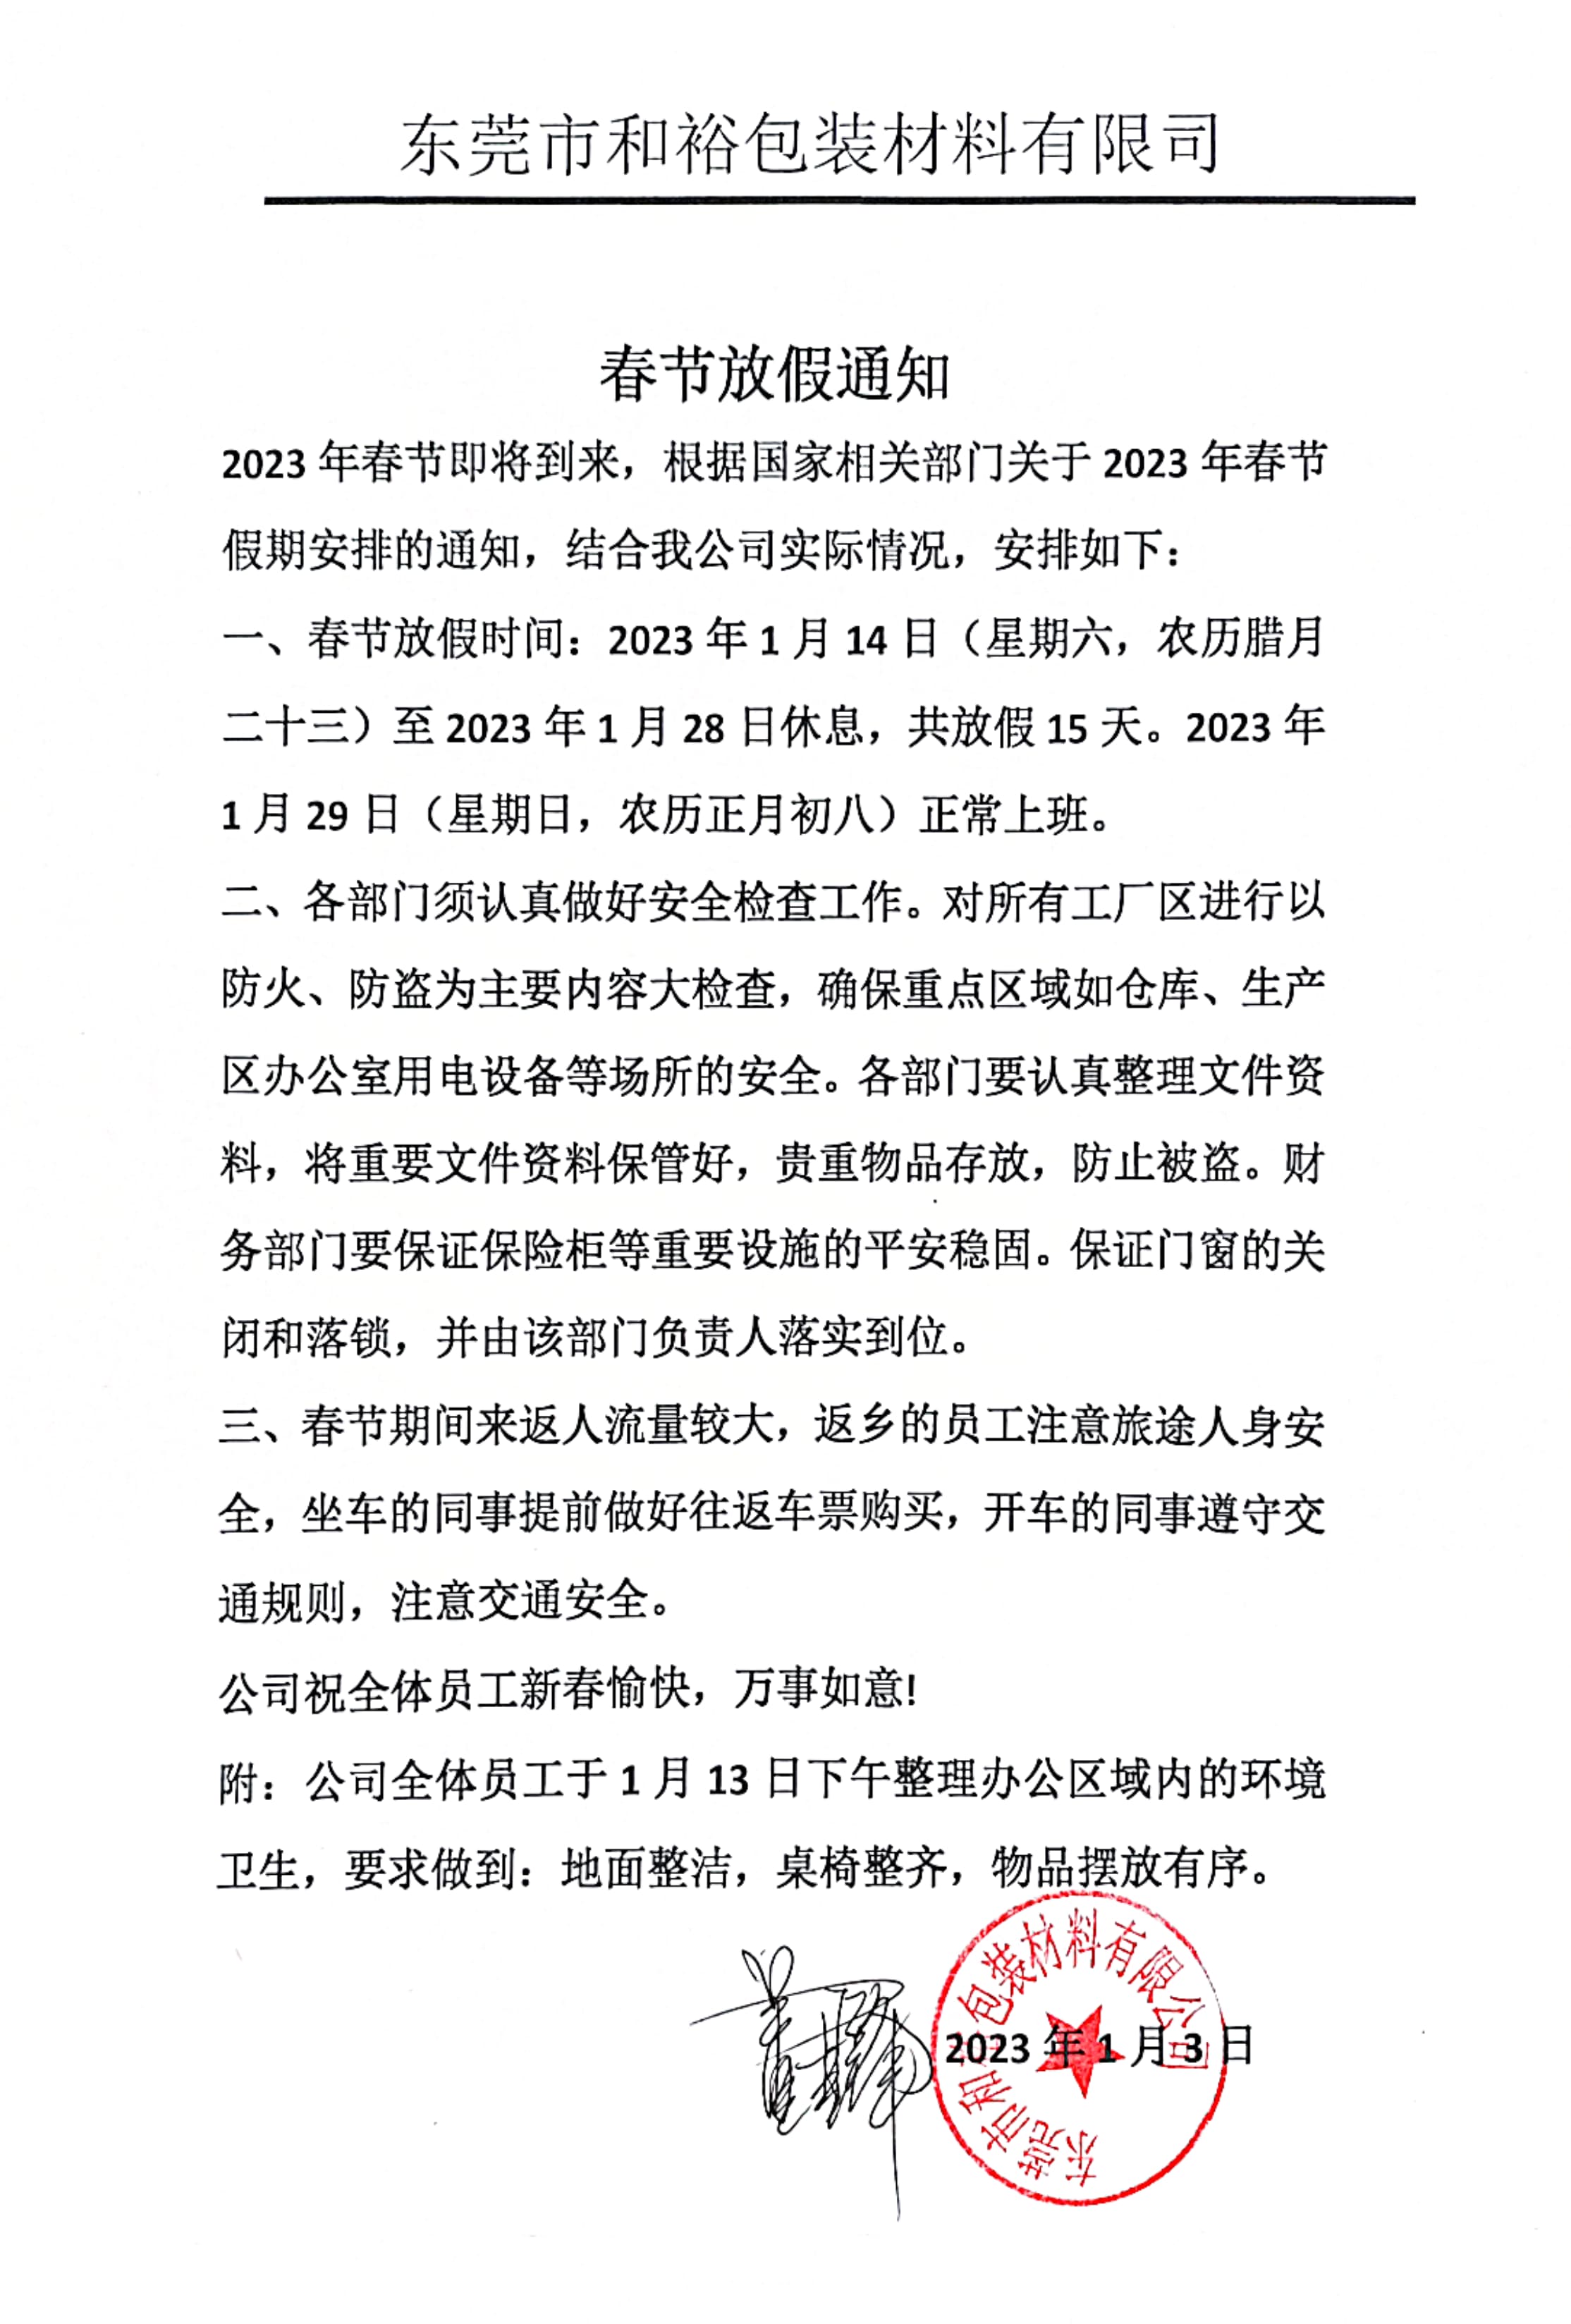 荆州市2023年和裕包装春节放假通知